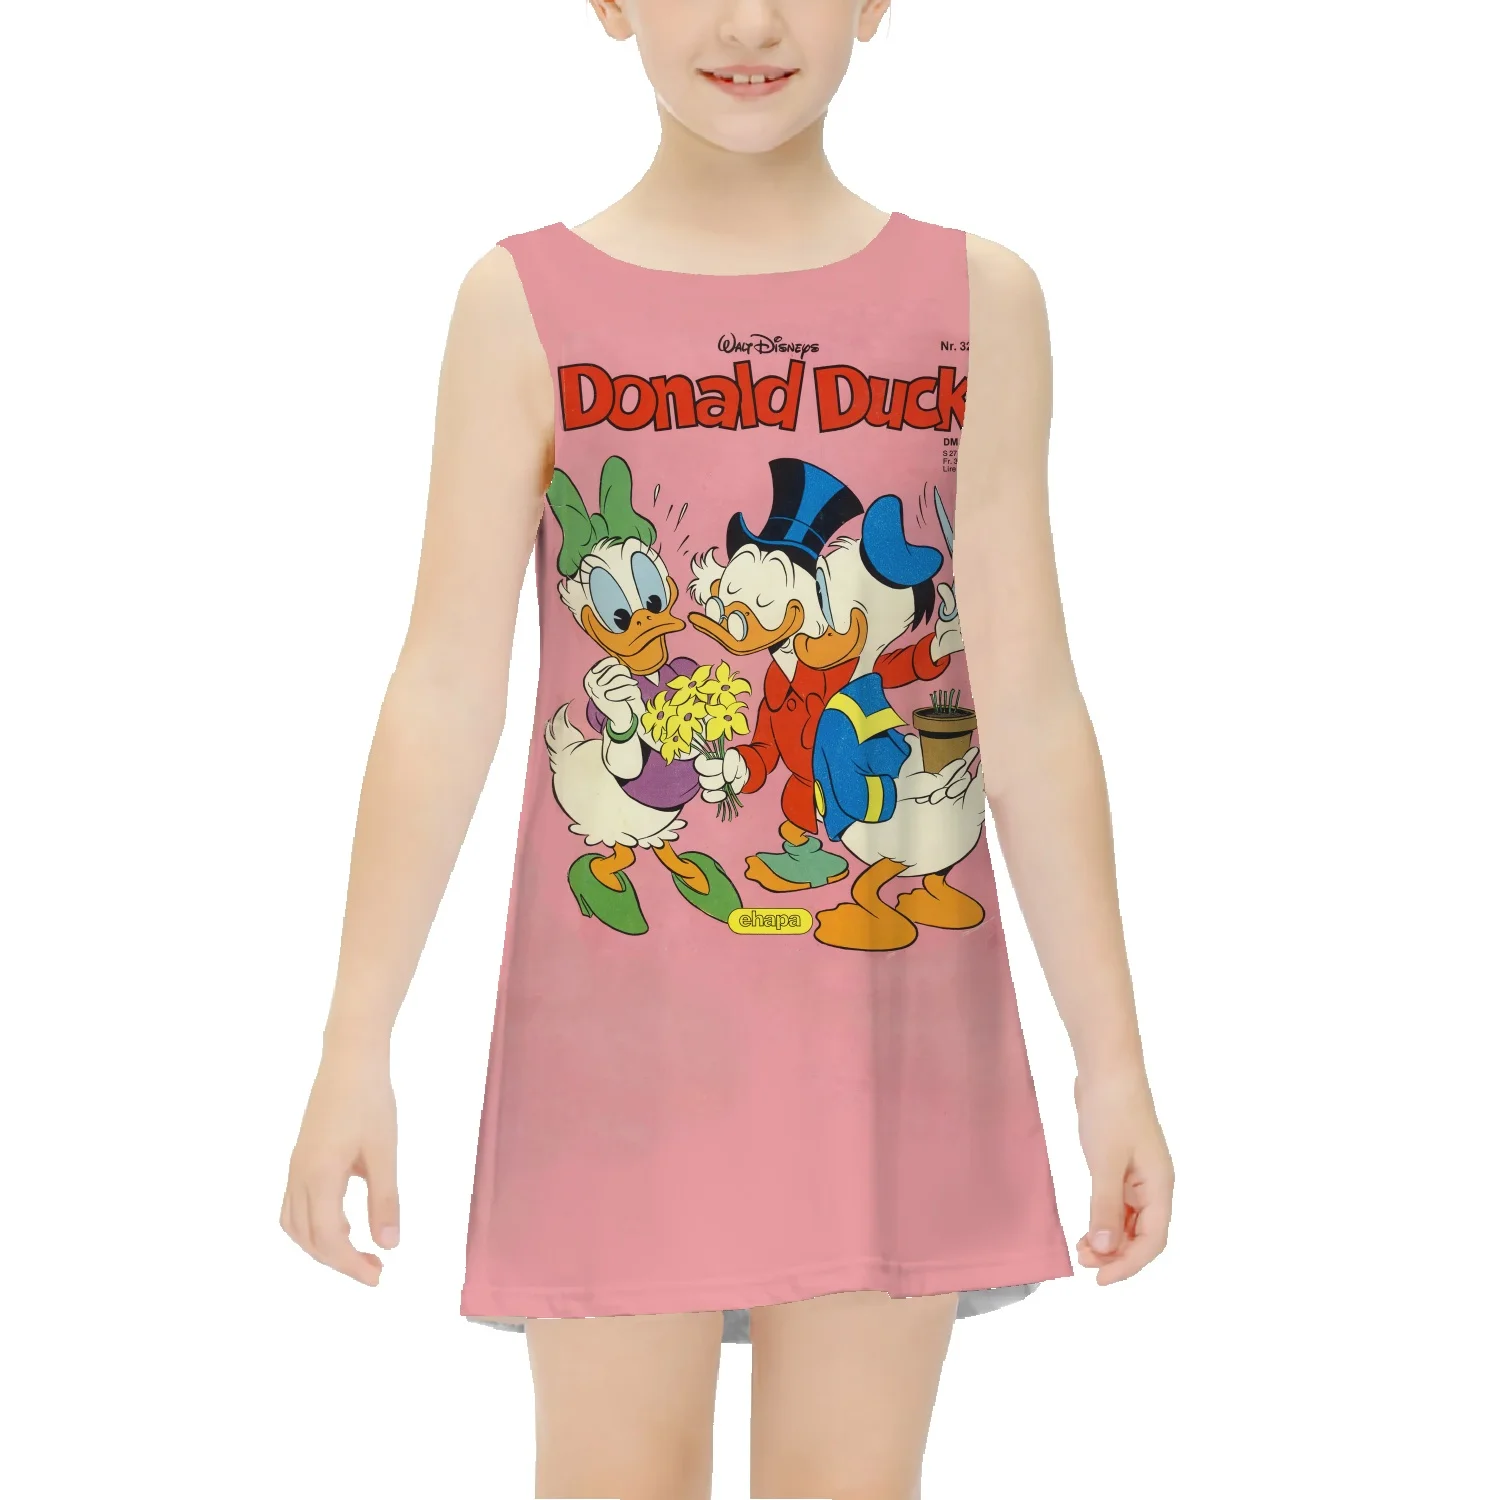 Disney Donald Duck Sleeveless Skirt Summer Girls Fashion Print Basketball Vest Skirt Small Sleeveless Thin T Skirt